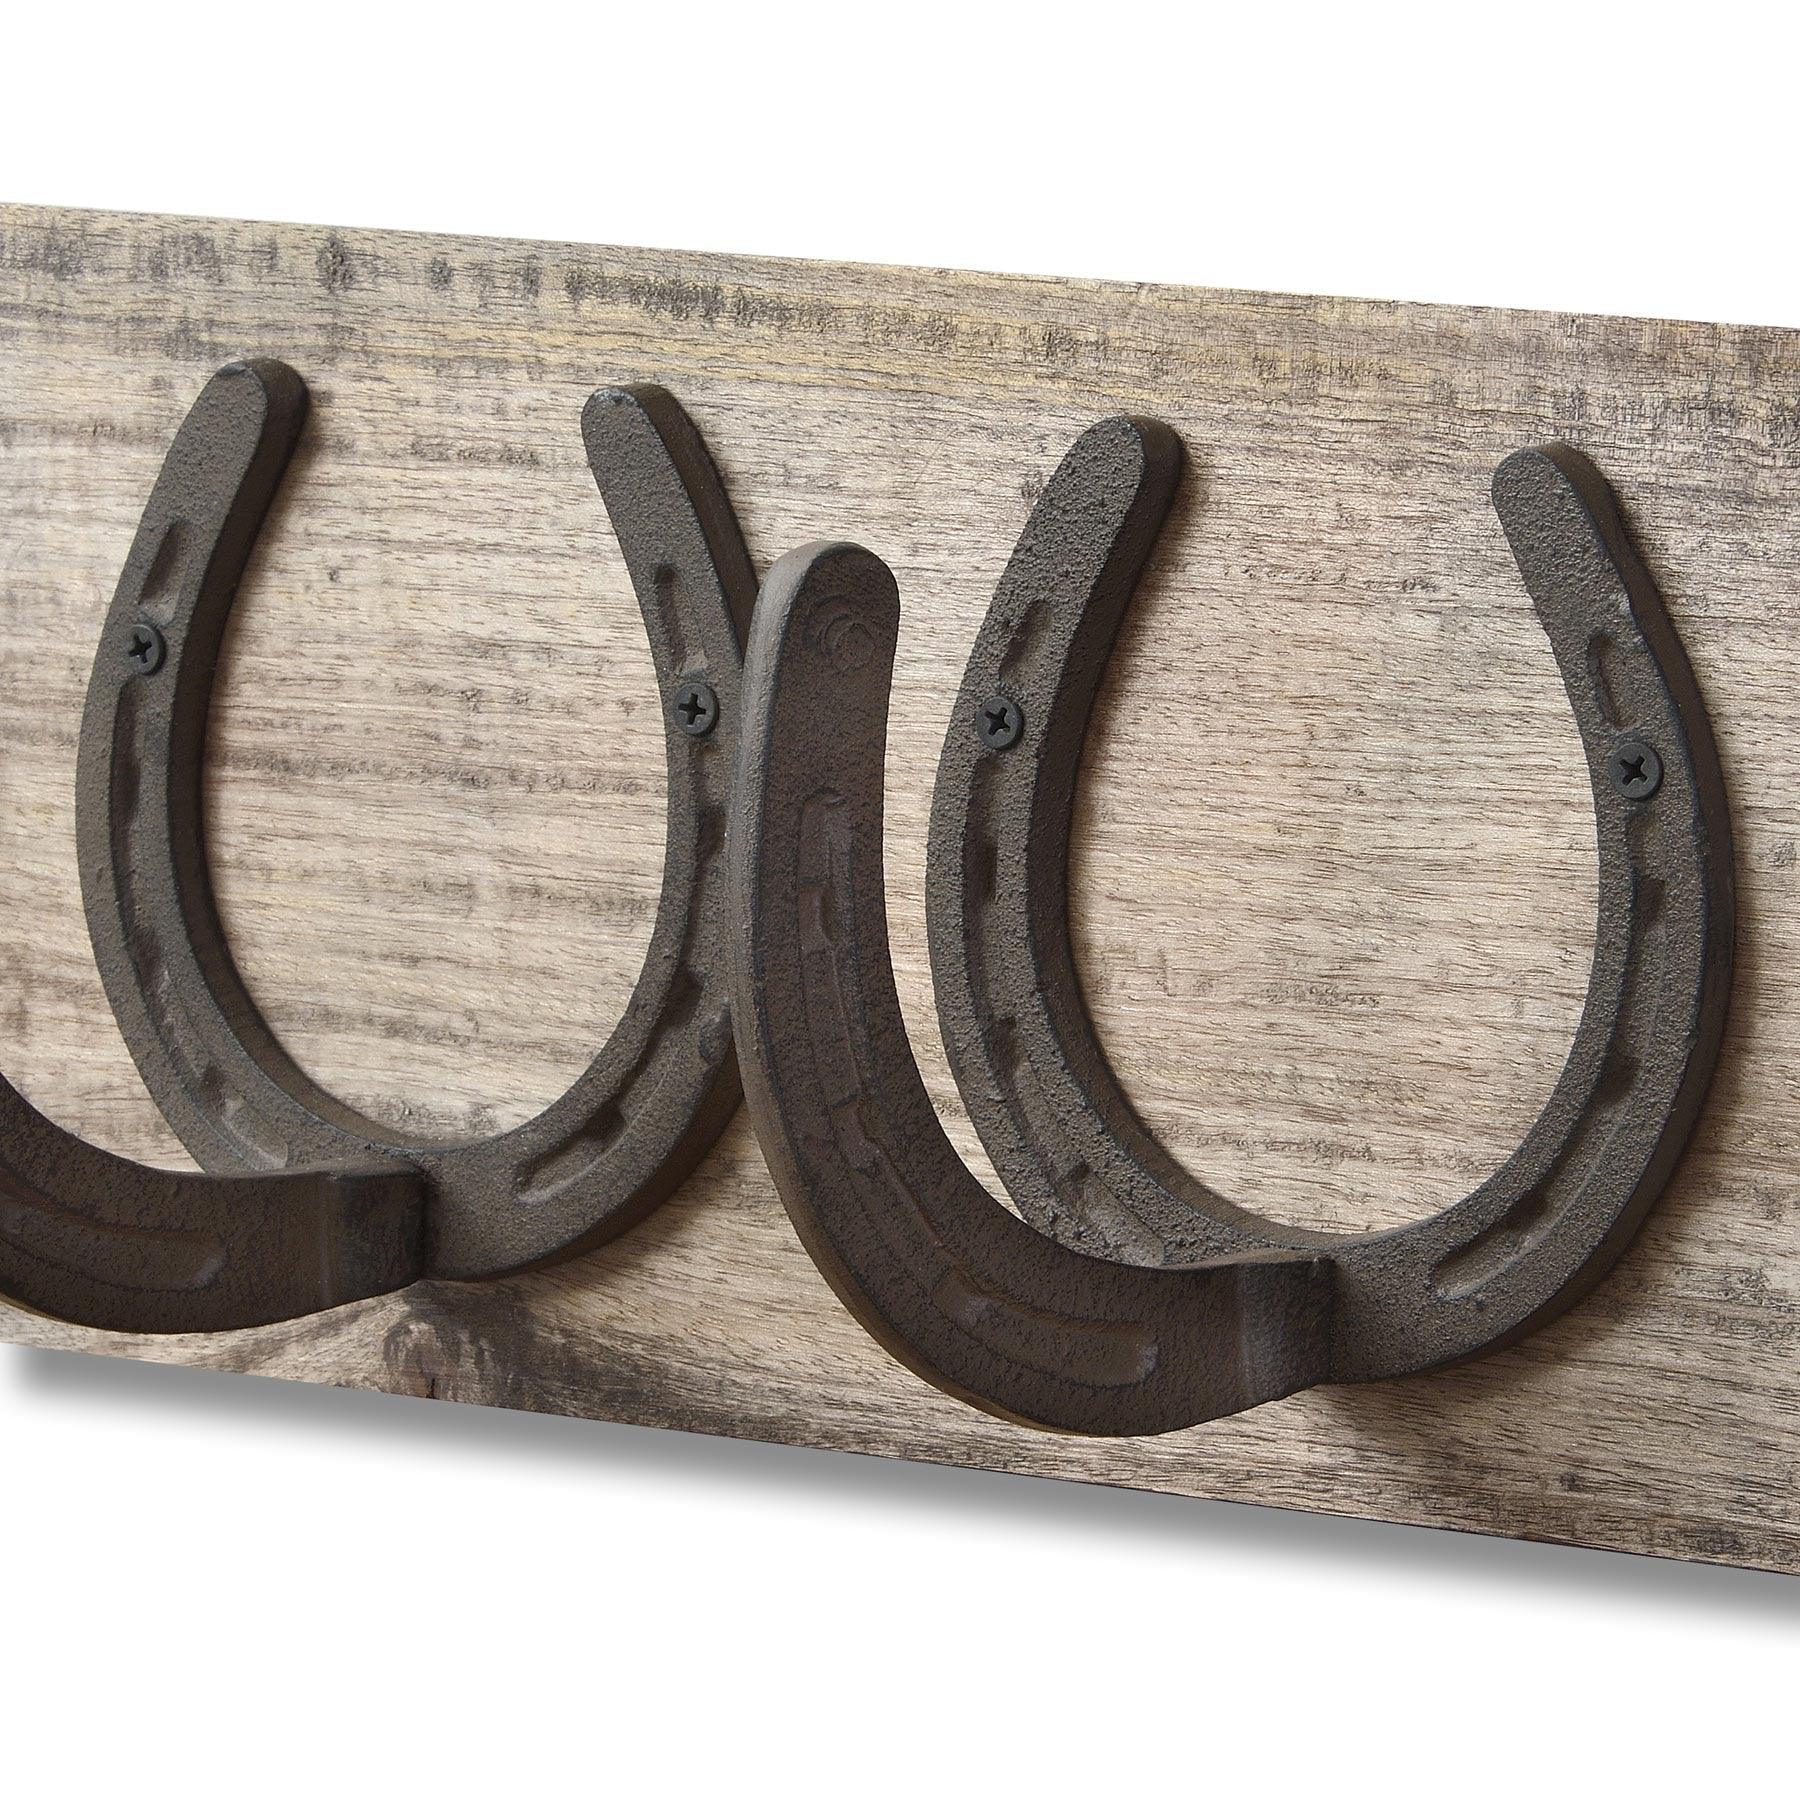 6 Horse Shoe Hooks On Dark Wood - Vookoo Lifestyle